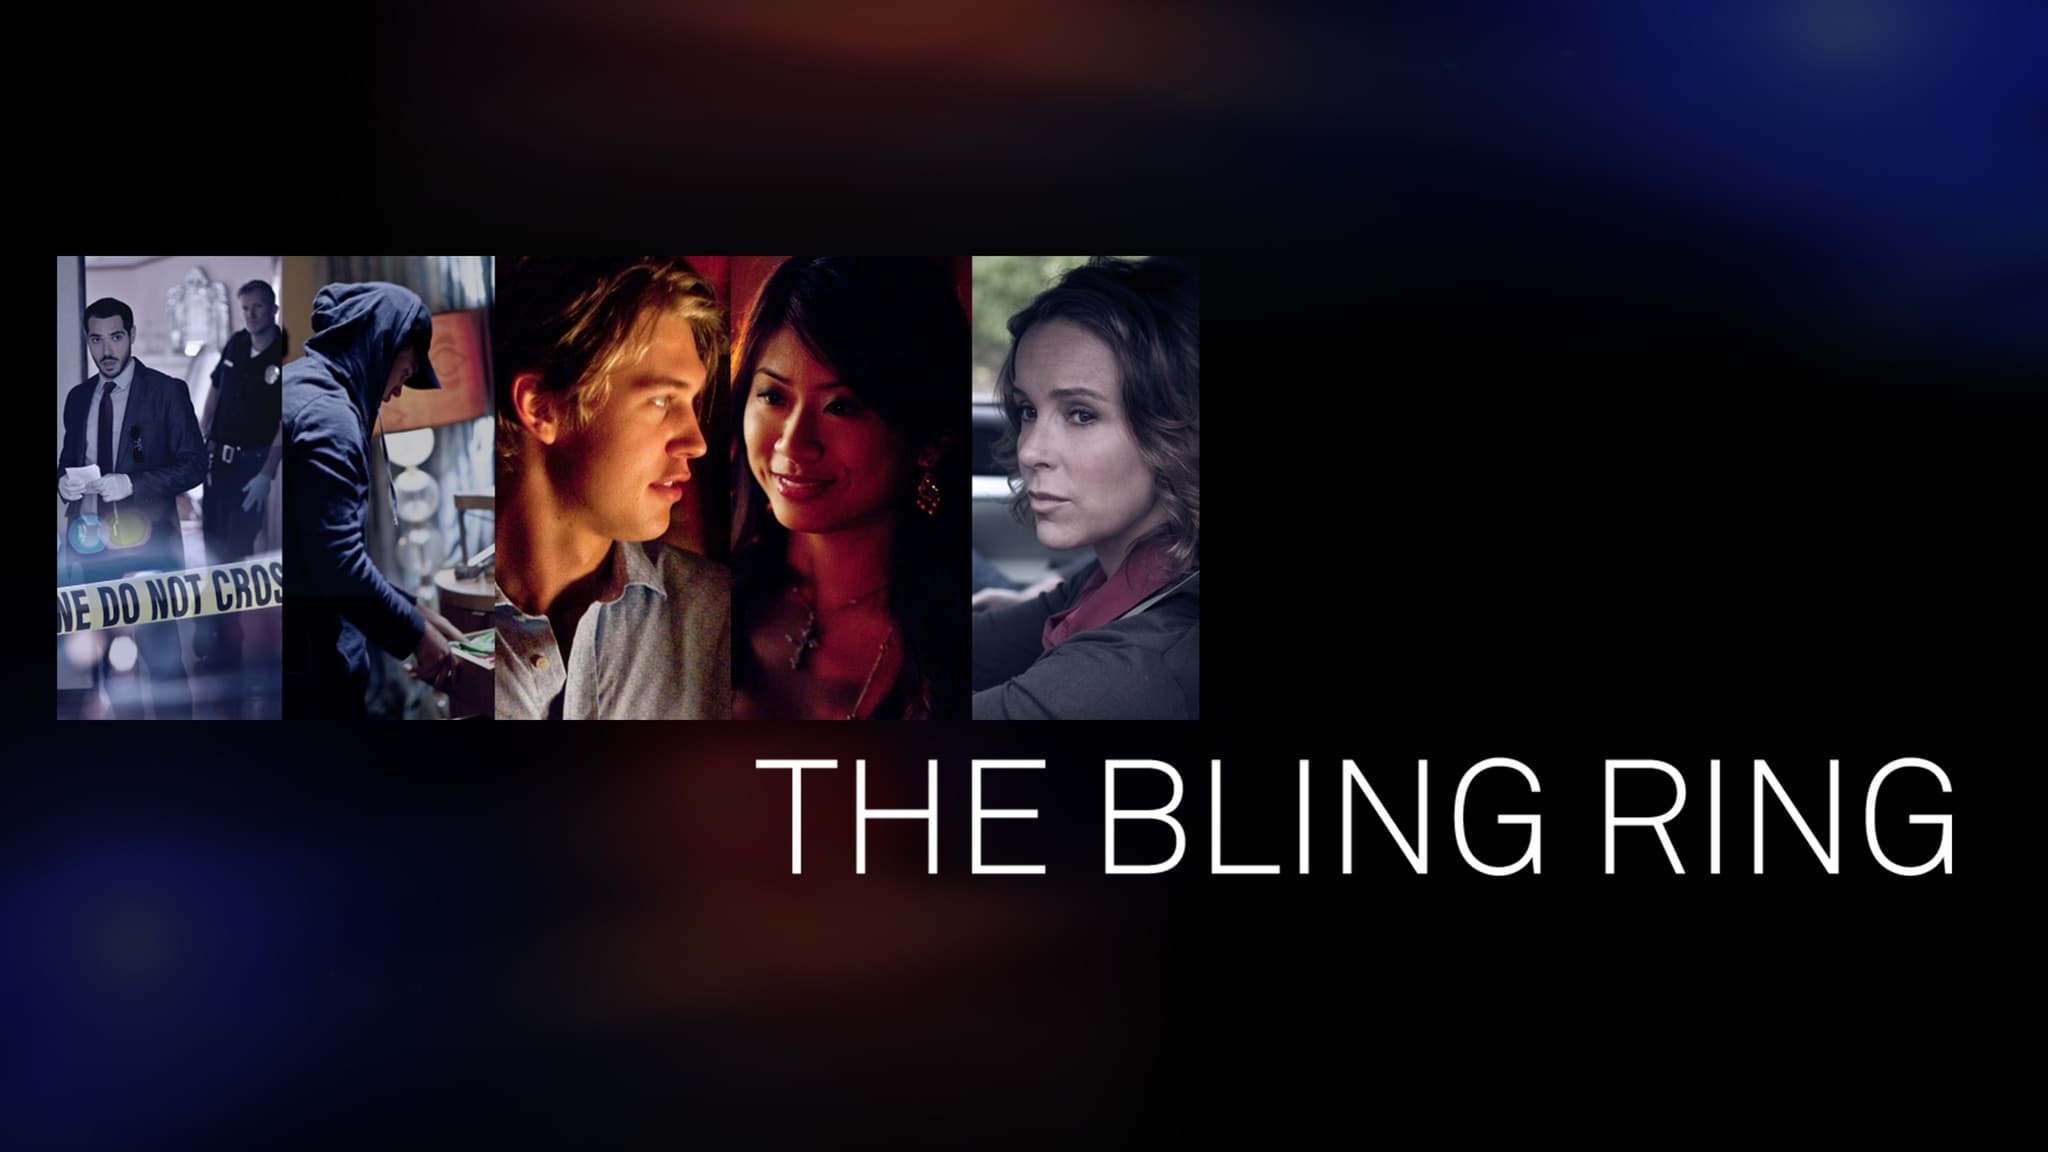 The Bling Ring (2011)